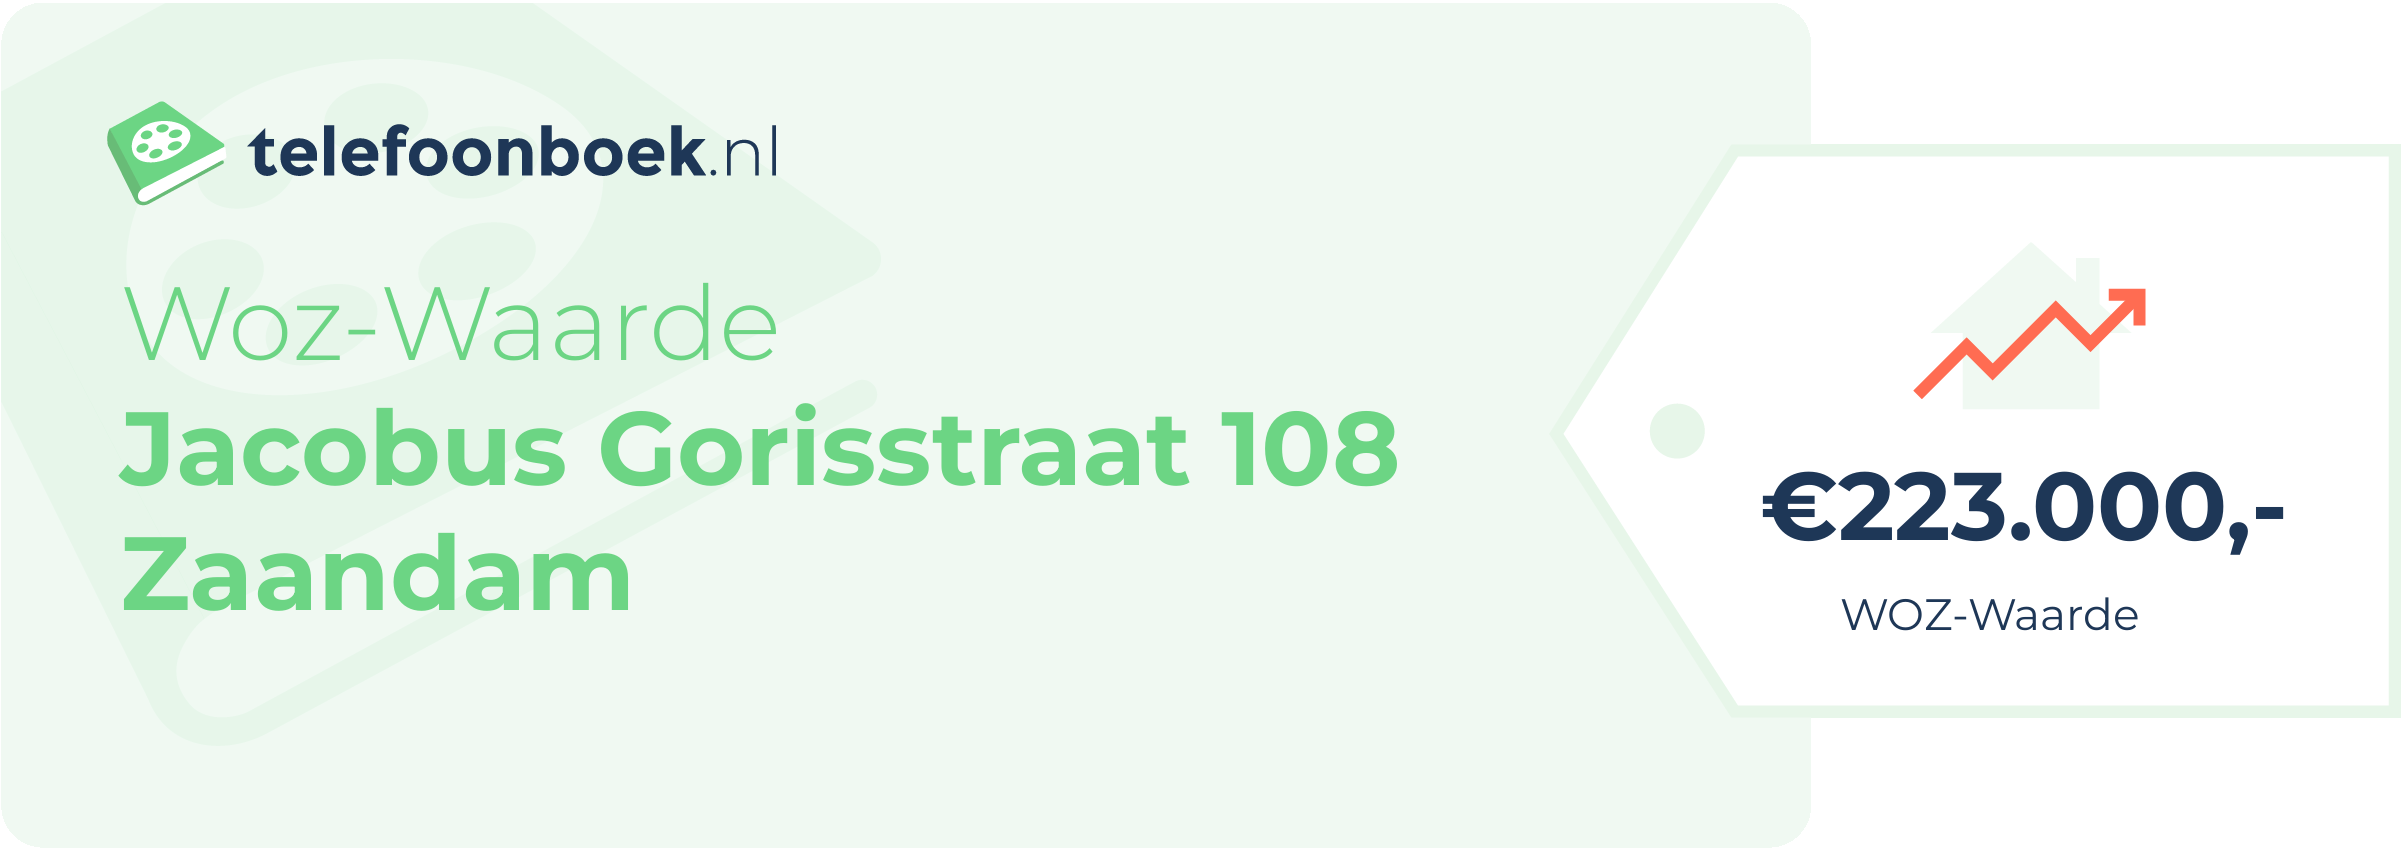 WOZ-waarde Jacobus Gorisstraat 108 Zaandam